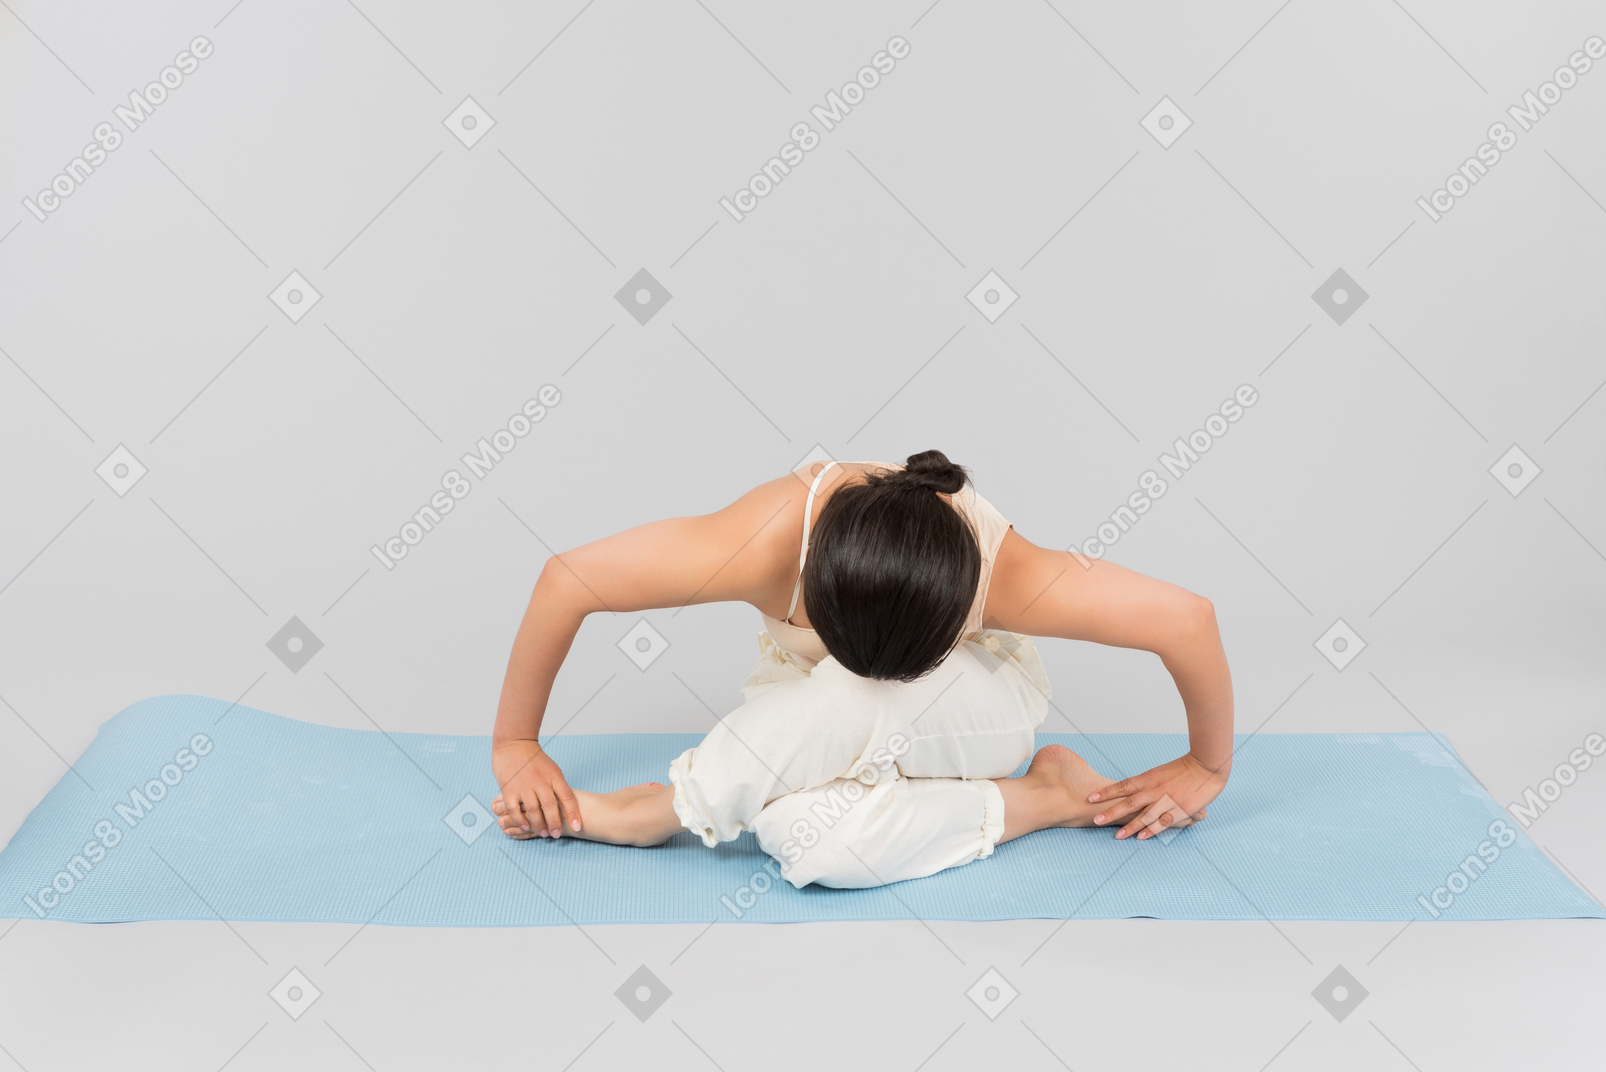 Jeune femme indienne assise dans une posture de yoga sur un tapis de yoga